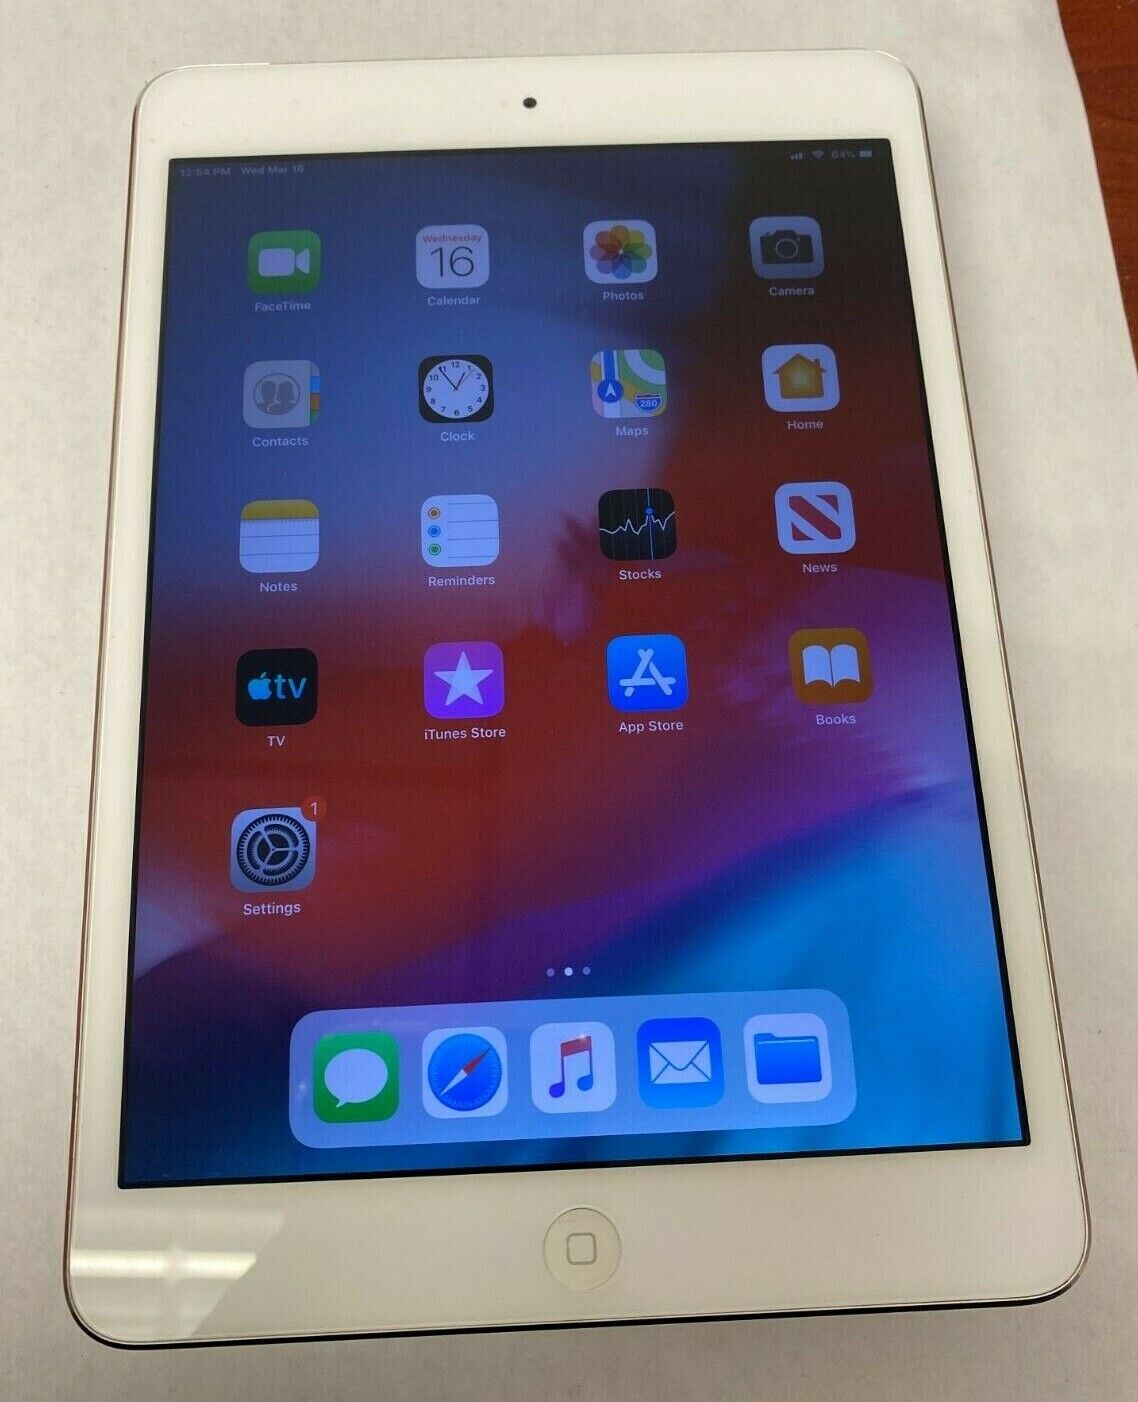 Apple iPad mini 2 16GB, Wi-Fi + Cellular (Verizon), 7.9in - Silver for 